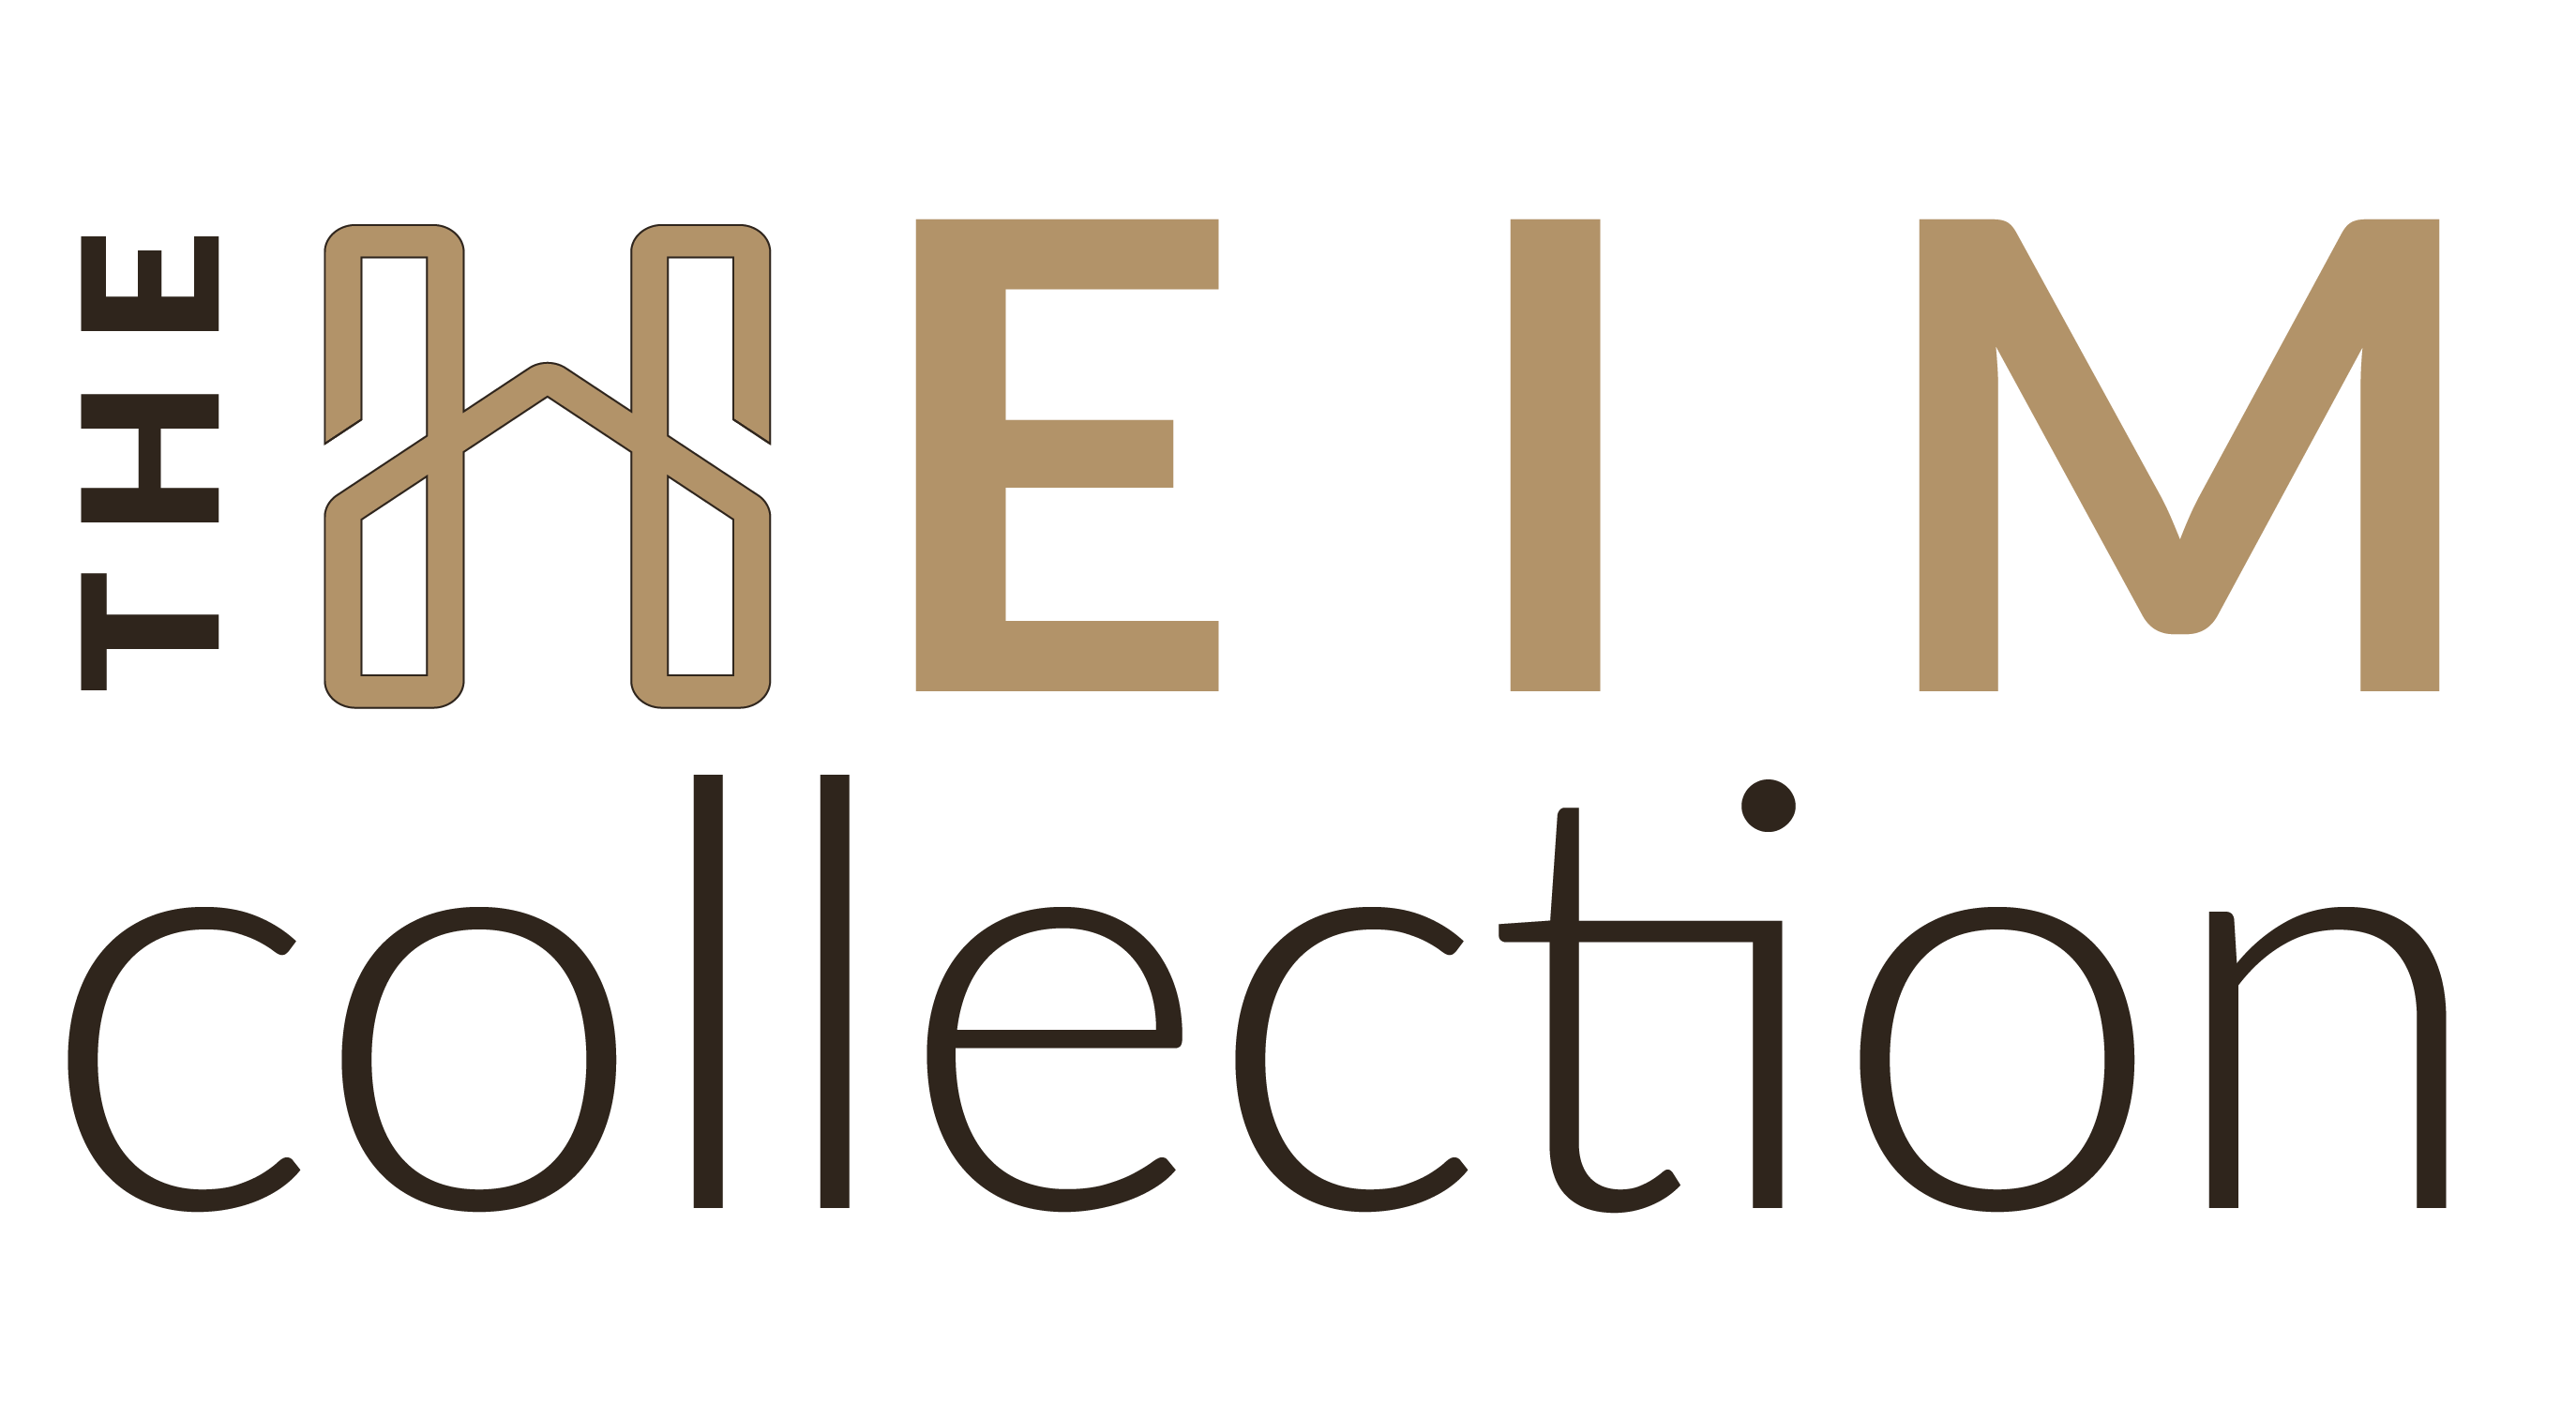 Heim Collection